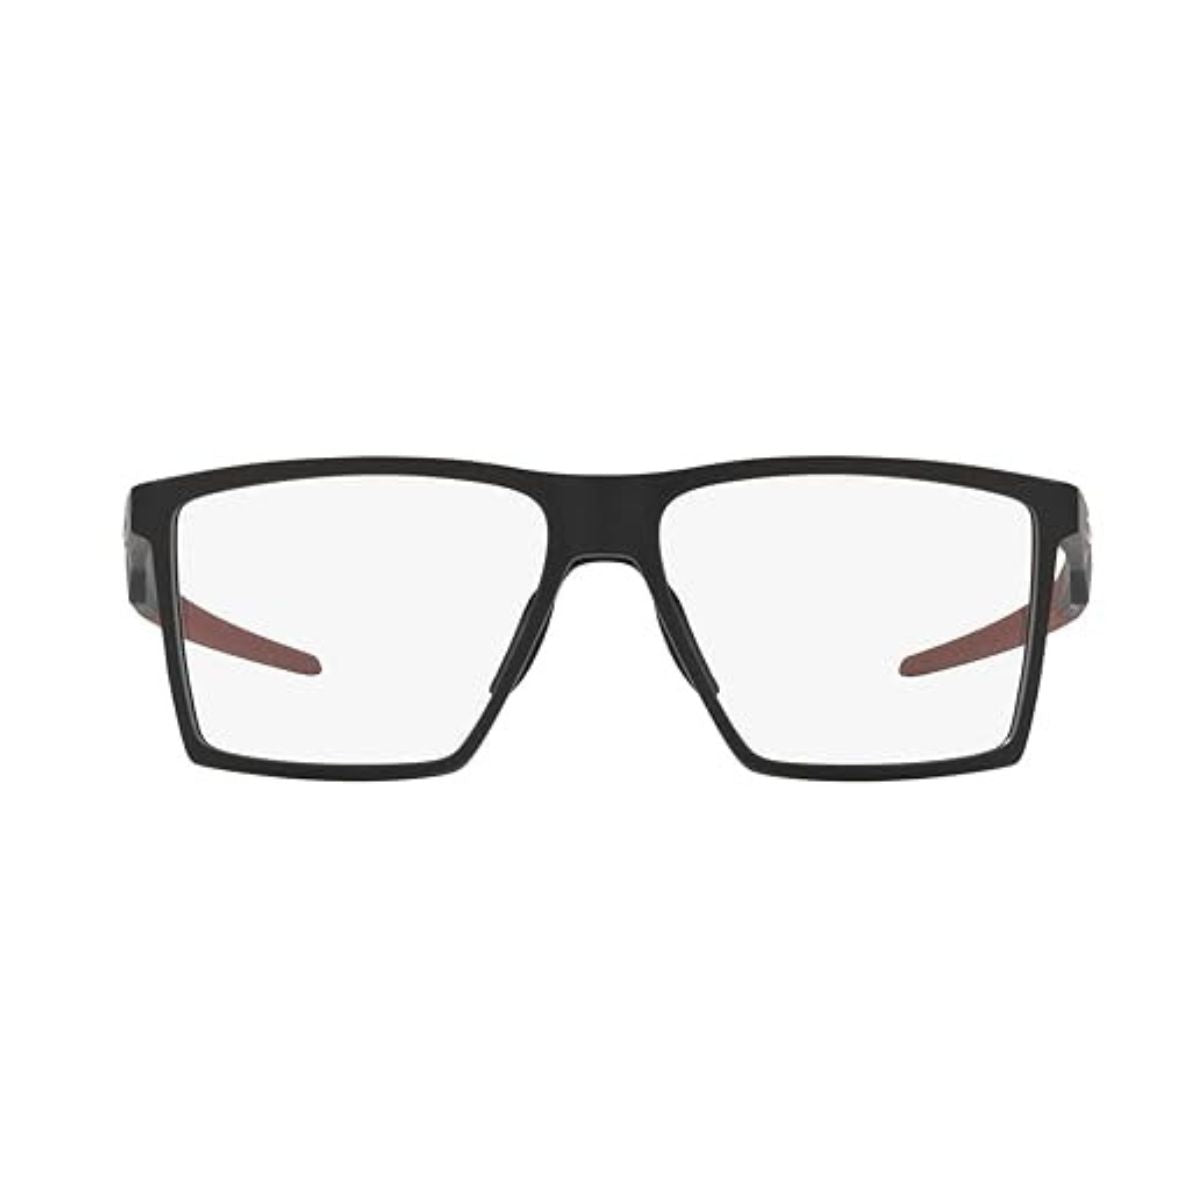 " Oakley 8052 0455 eyesight black frame for men's online at optorium"